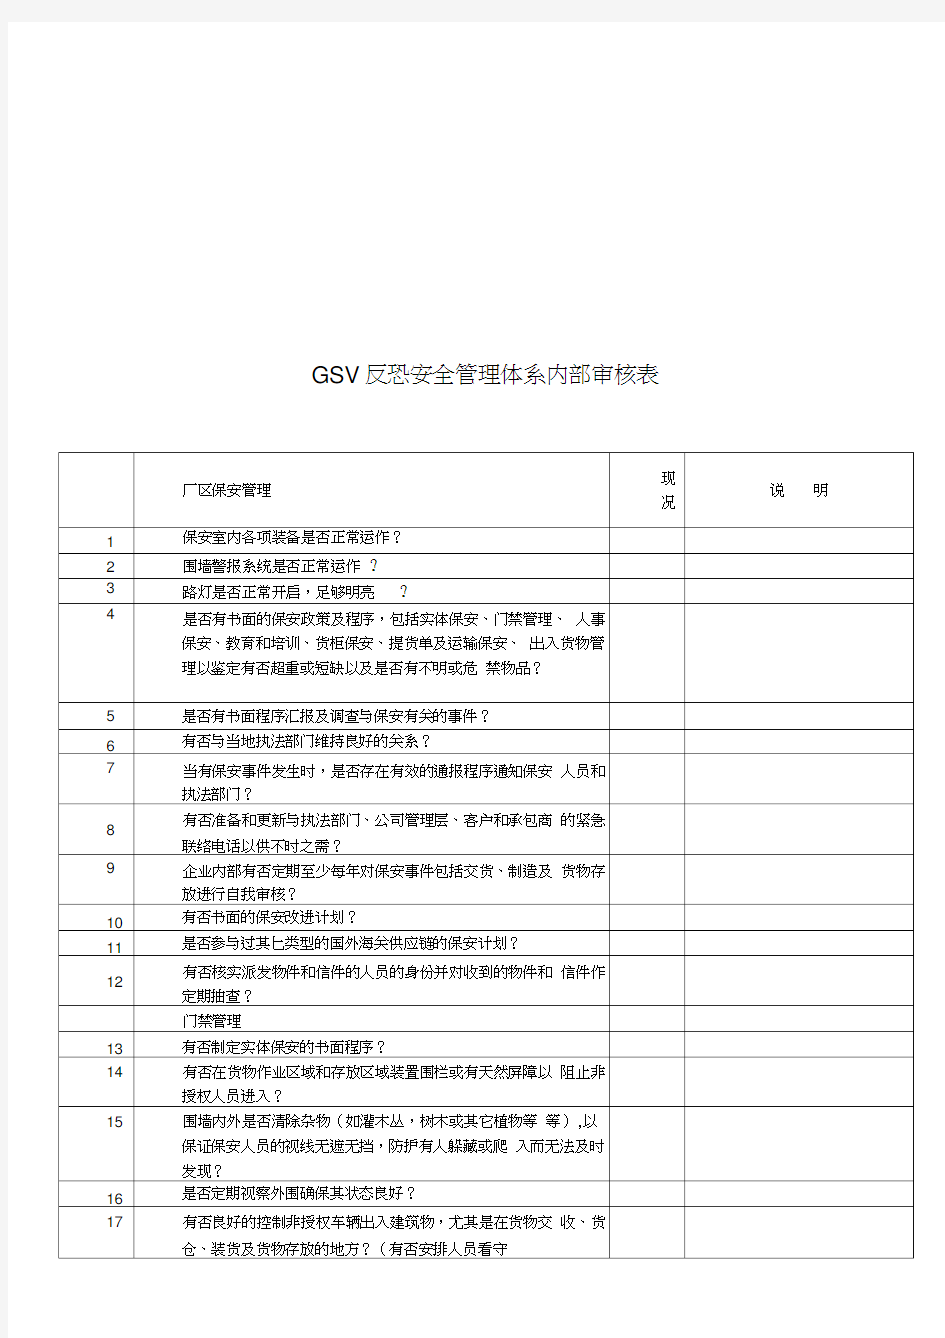 最新GSV反恐安全管理体系内部审核表资料